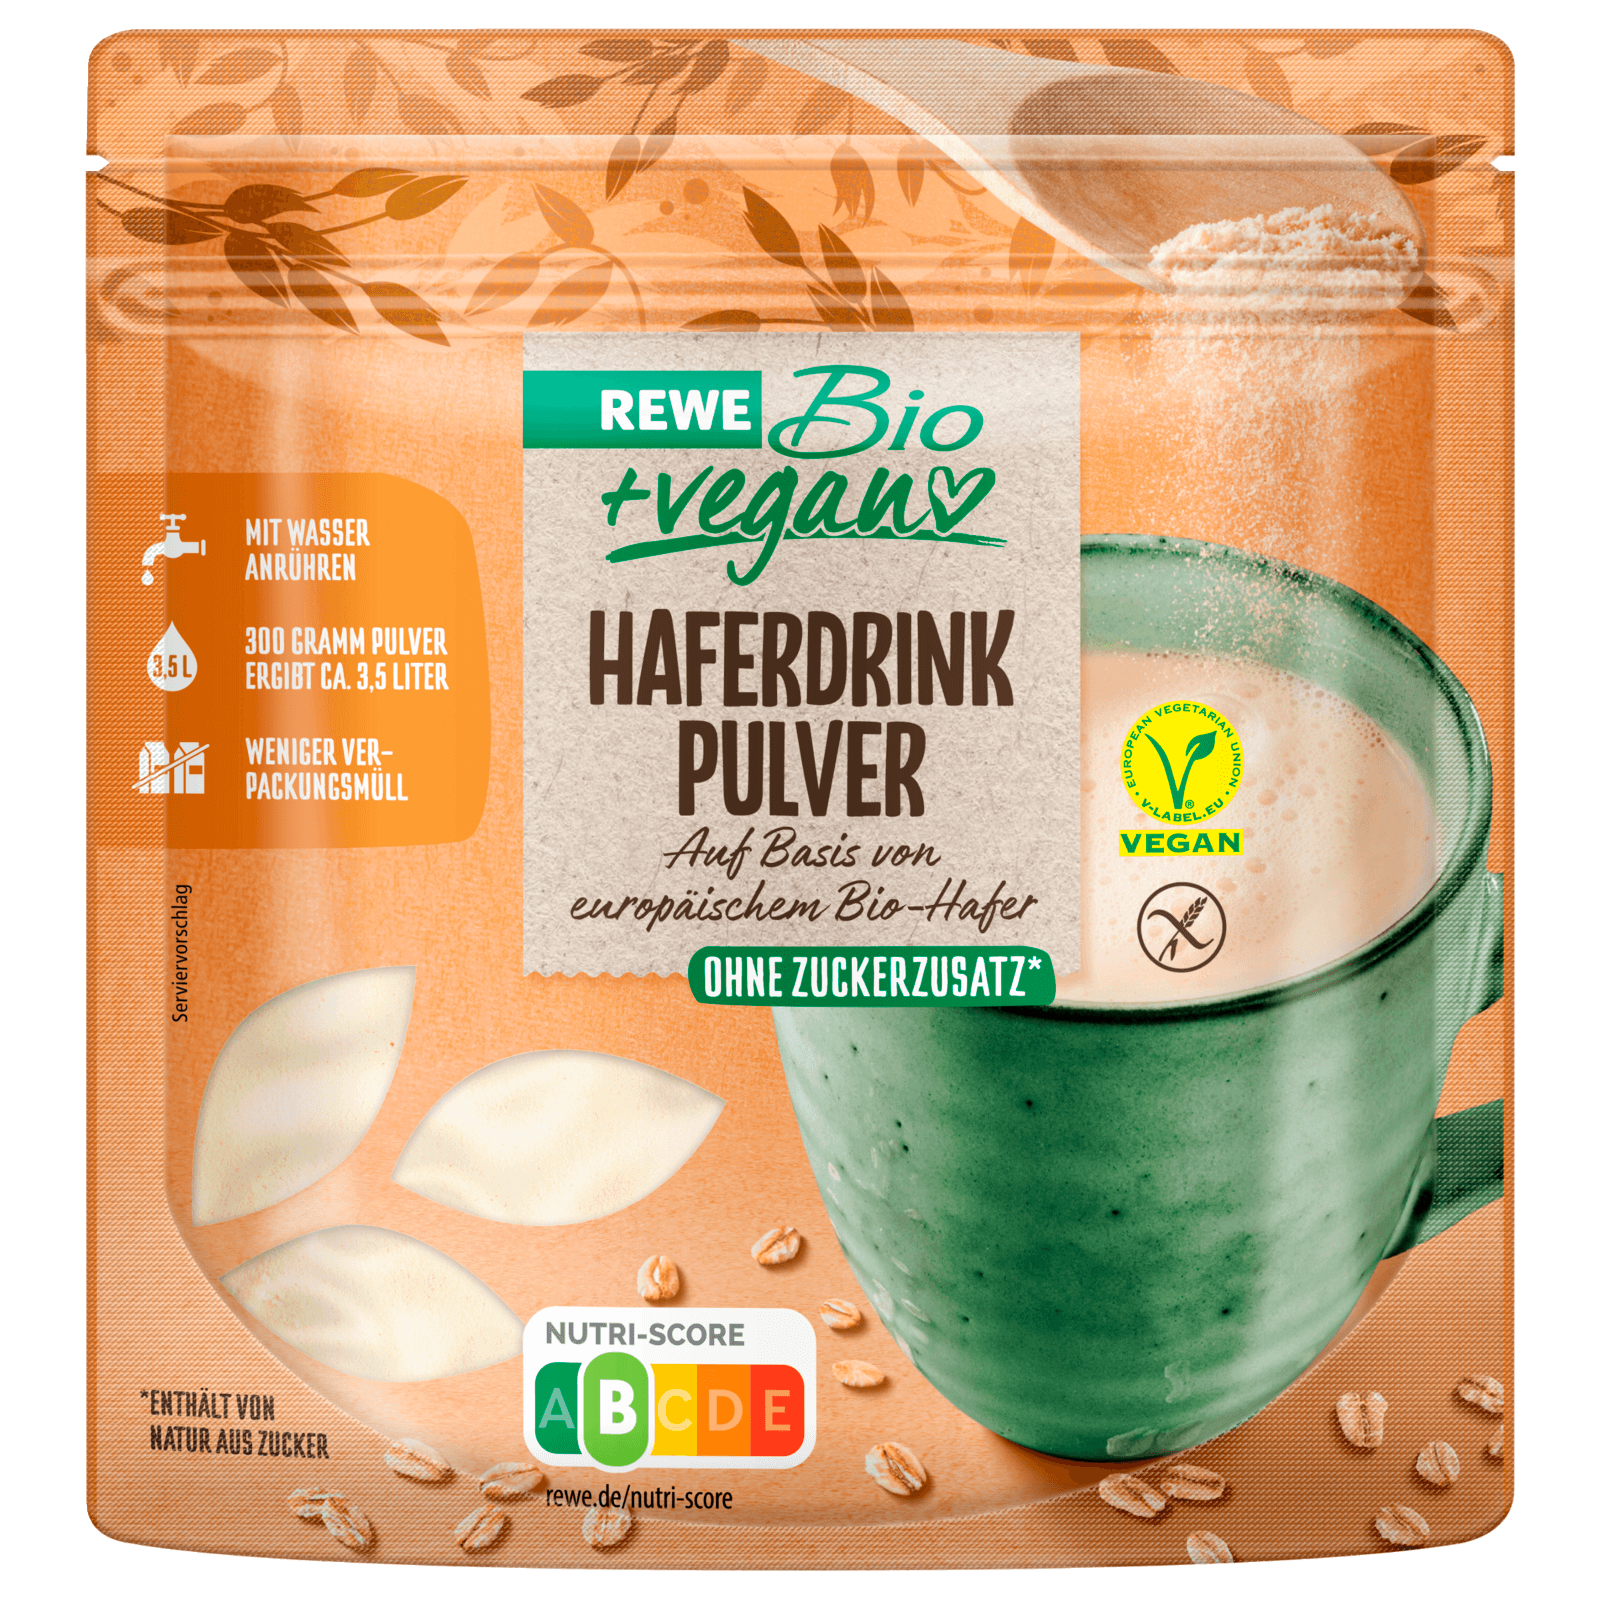 REWE Bio + vegan Haferdrink Pulver glutenfrei 300g